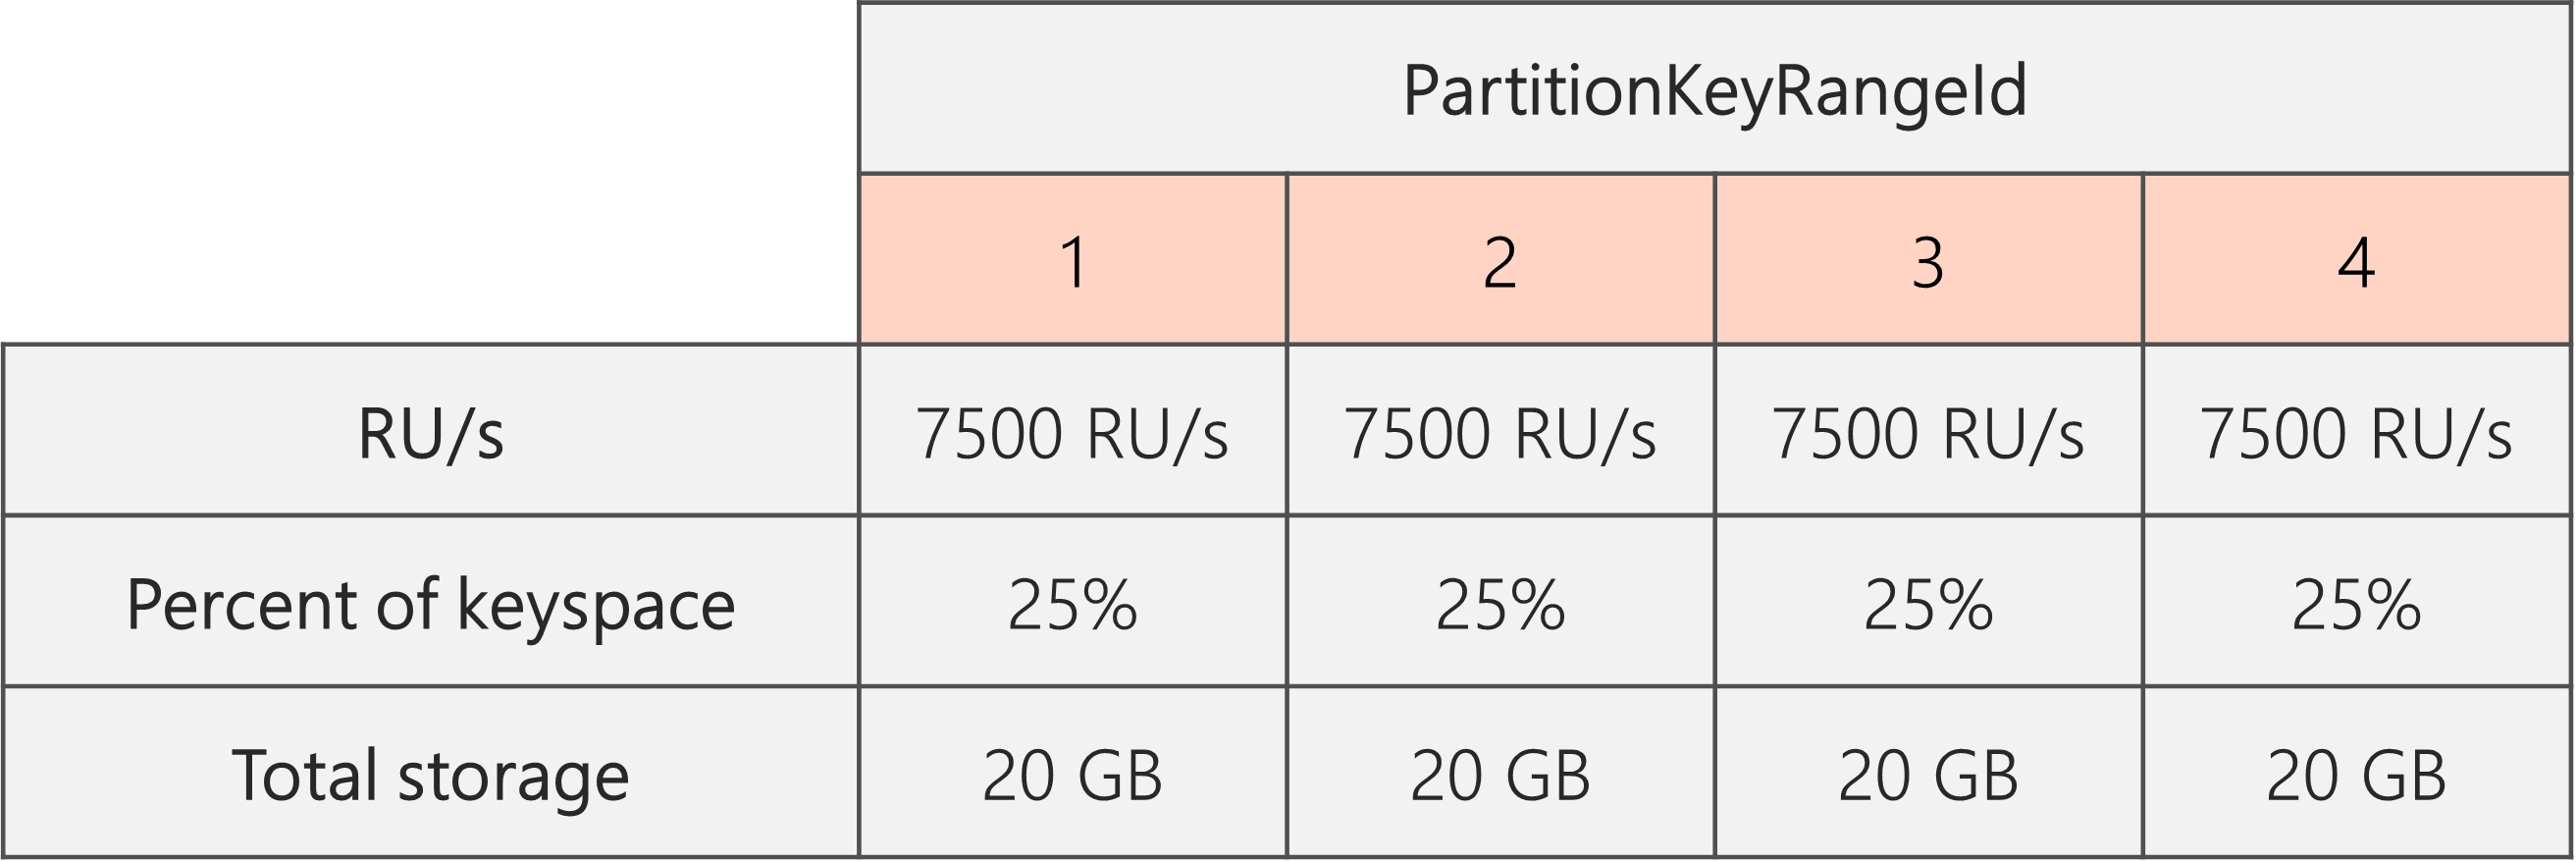 Po zakończeniu dzielenia i obniżeniu ru/s z 40 000 RU/s do 30 000 RU/s, istnieją 4 PartitionKeyRangeIds, każdy z 7500 RU/s i 25% całkowitej przestrzeni kluczy (20 GB)